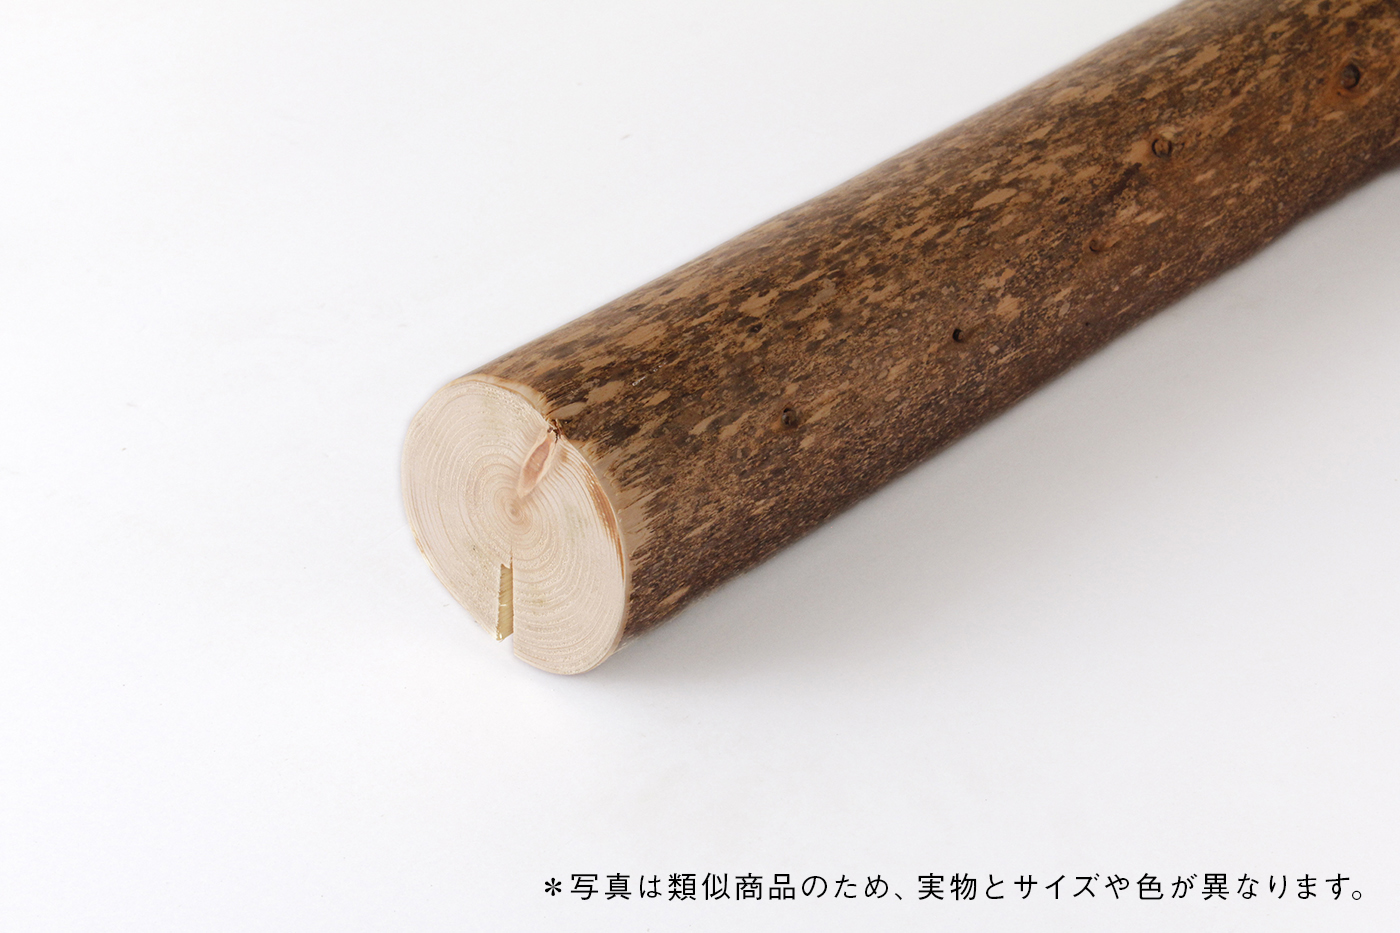 世界の 丸太 たるき 垂木タルキ さび 錆 ひのき1820ｘ60φ末口サイズ